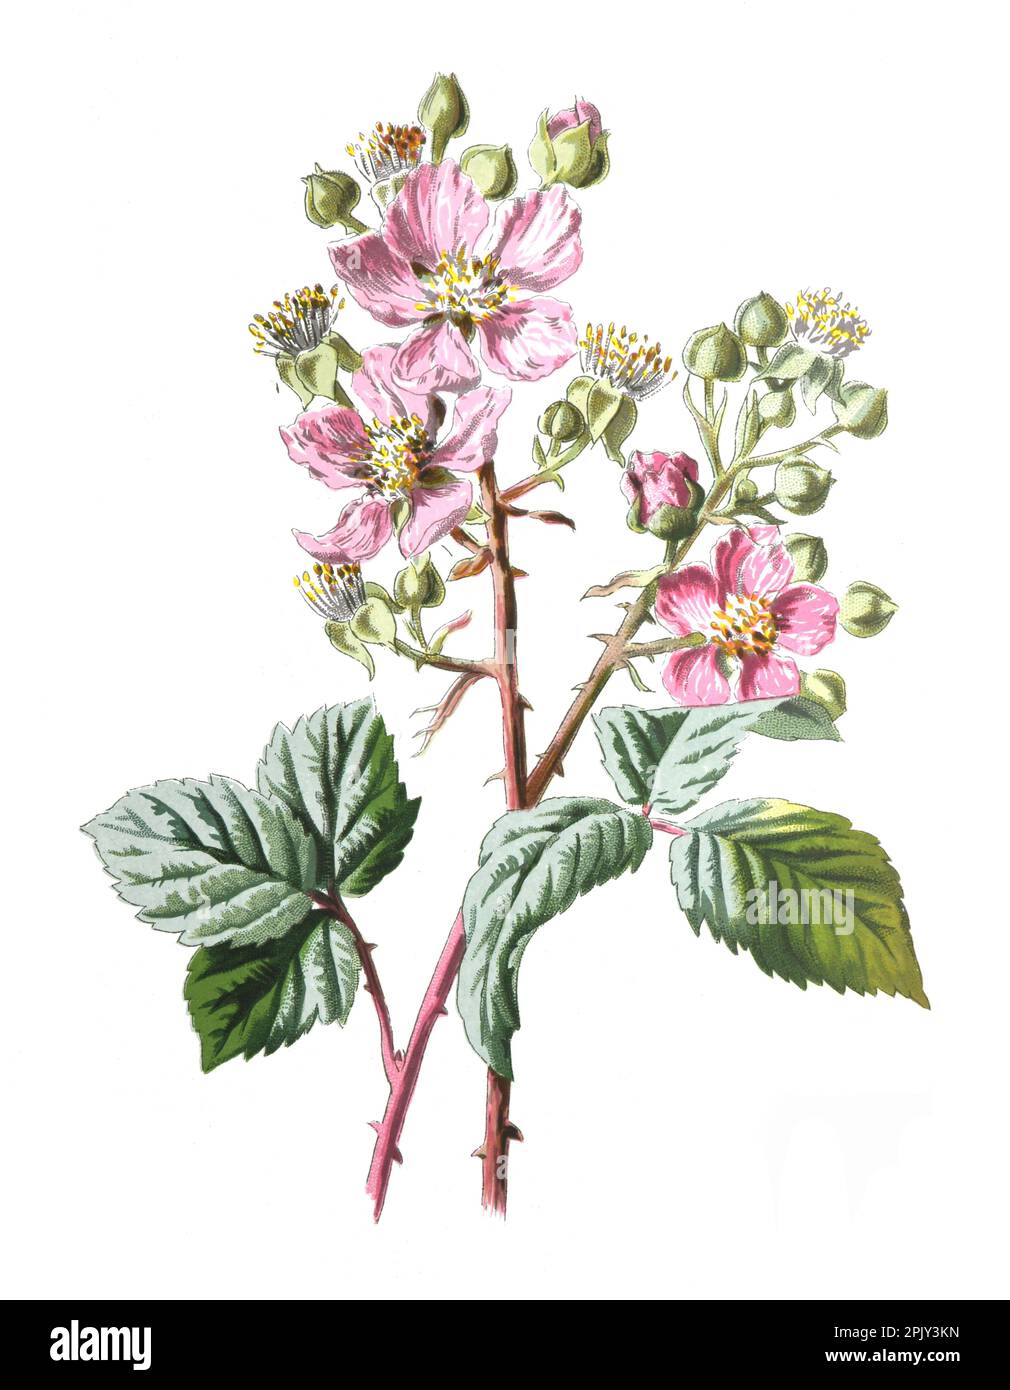 Brombeerblüte oder die gewöhnliche Brombeere, Rubus fruticosus Pflanze. Gesunde Bio-Fruchtpflanze.. Antike handgezeichnete Feldblumen Illustration. Stockfoto